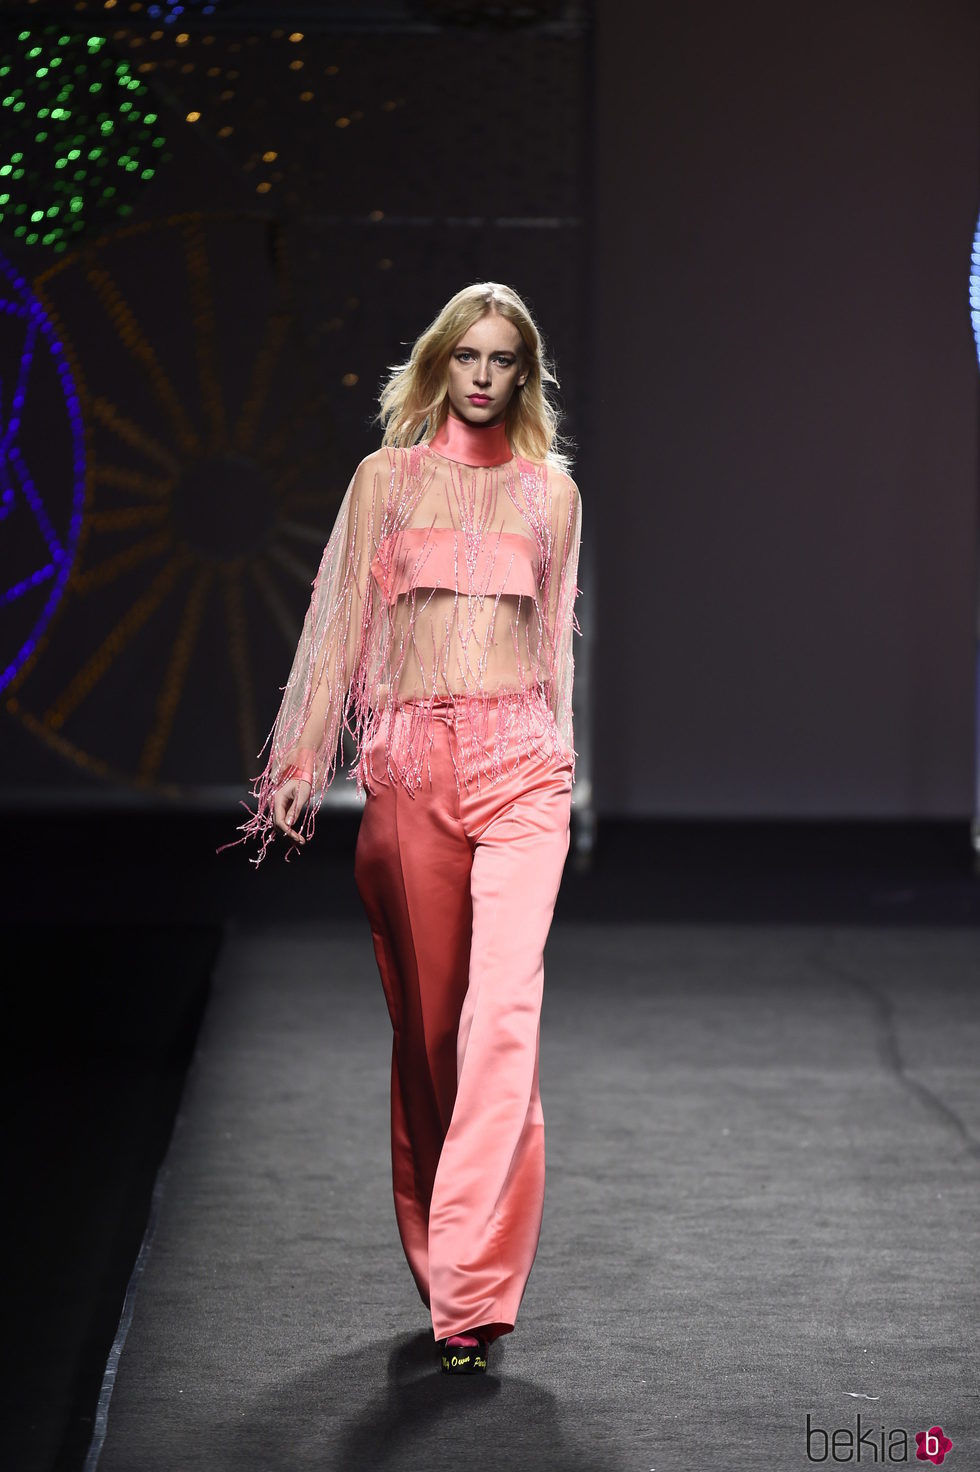 Pantalón y crop top con transparencia y flecos rosa de Juana Martín colección otoño/invierno 2018/2019 en Madrid Fashion Week